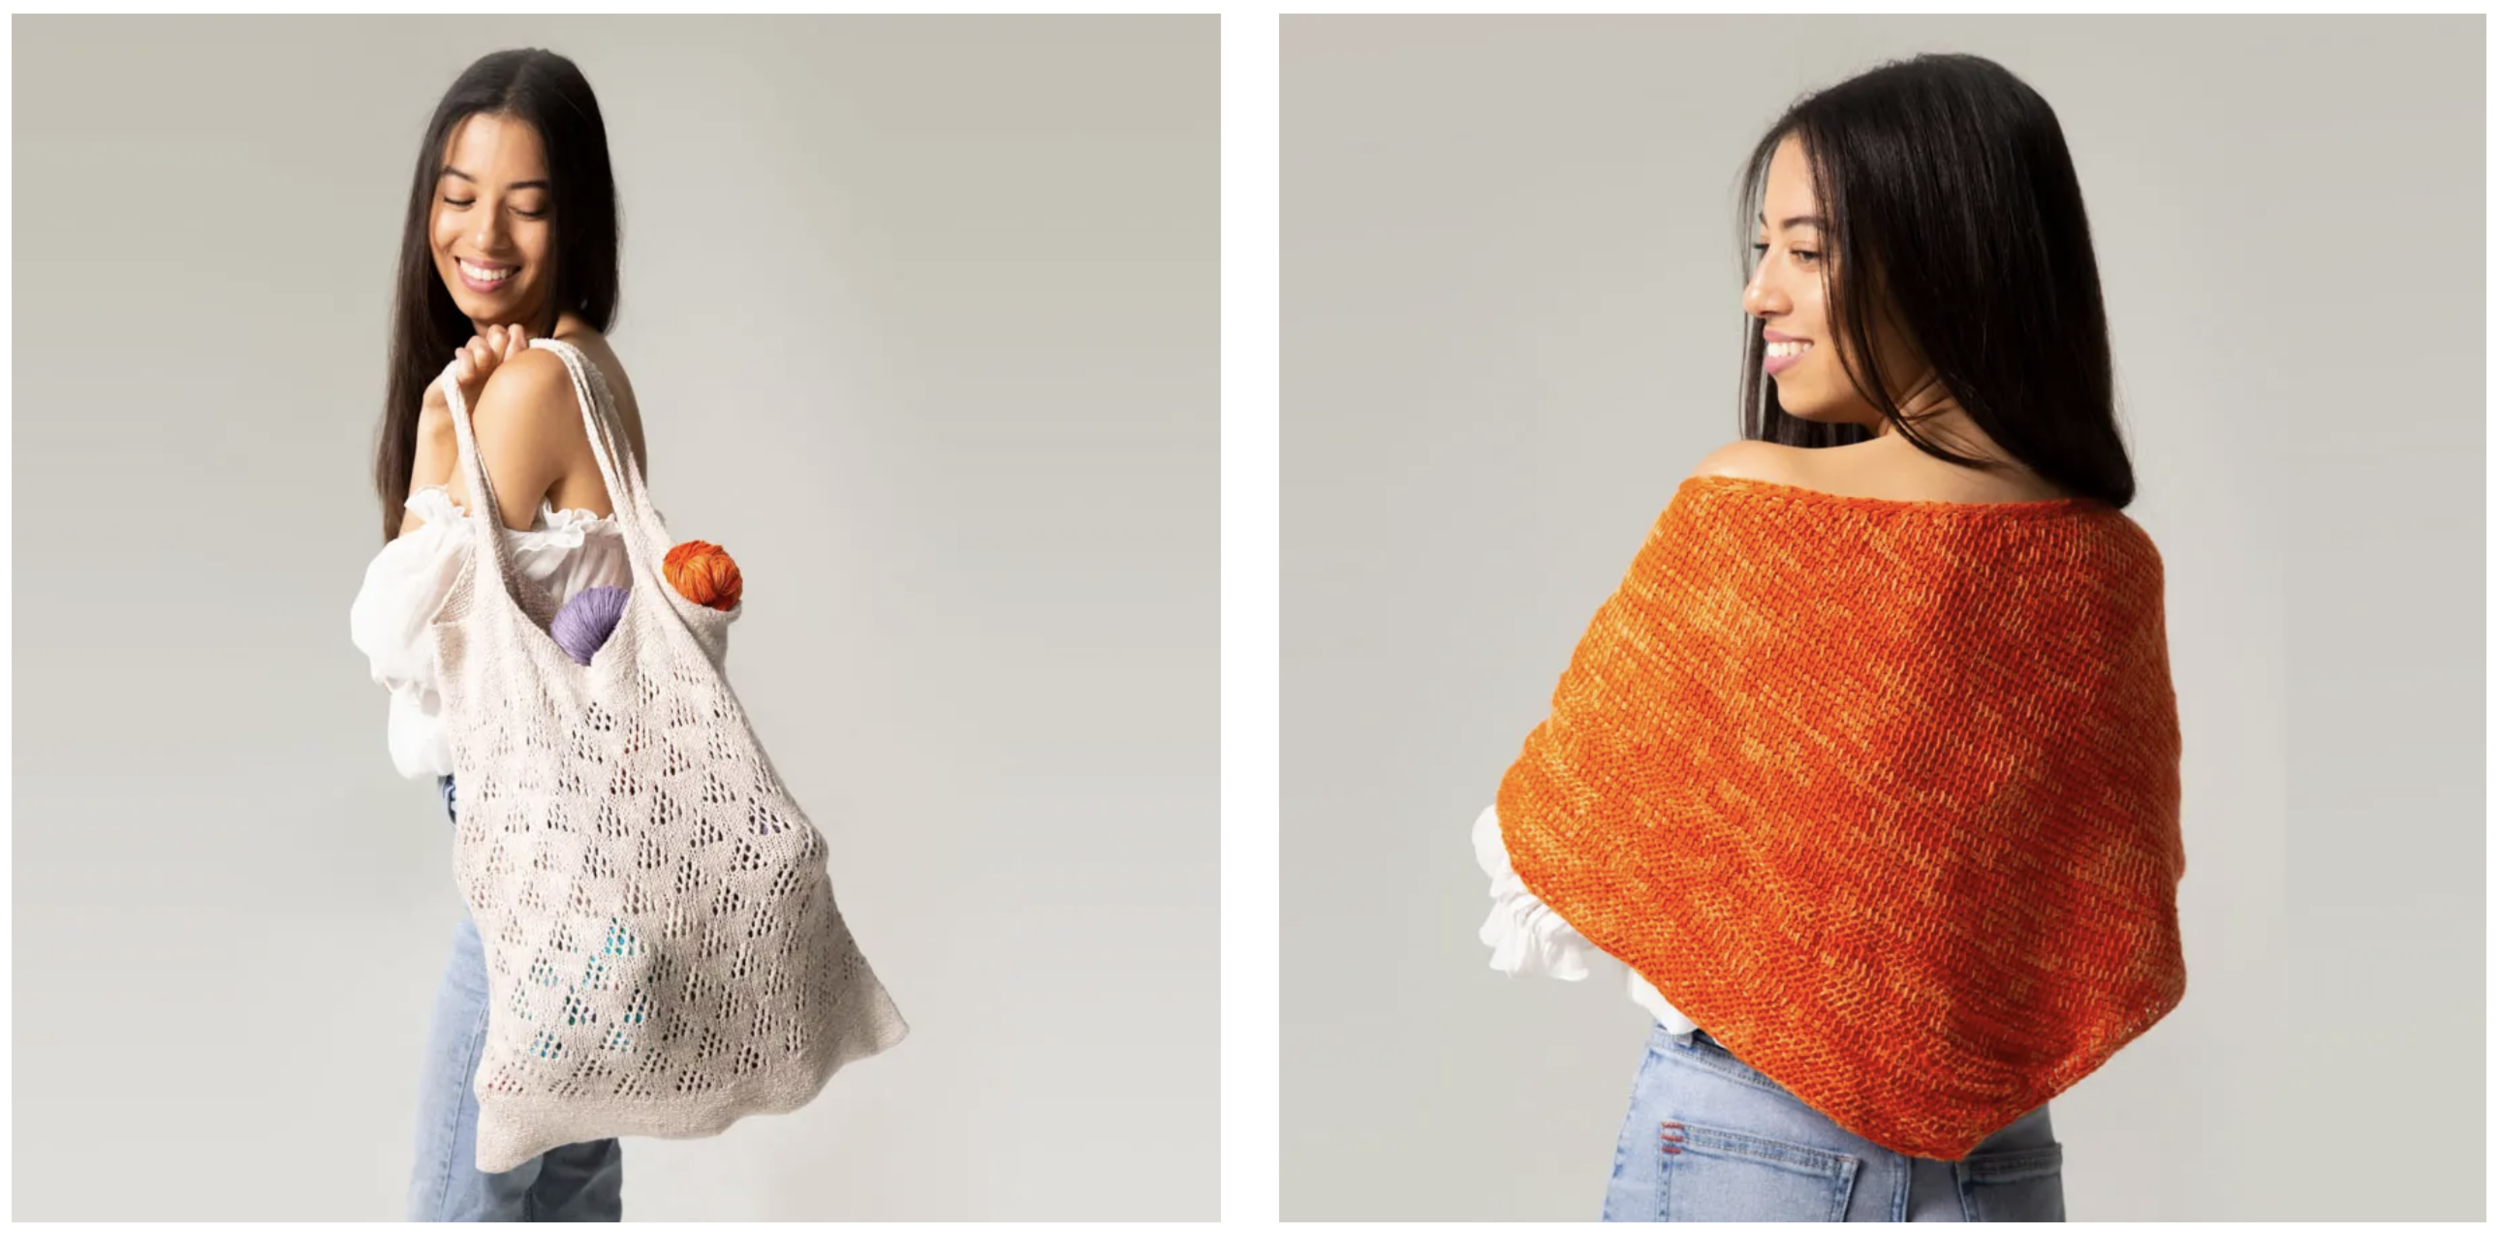 Haze Handbag, FREE Crochet Pattern - TL Yarn Crafts